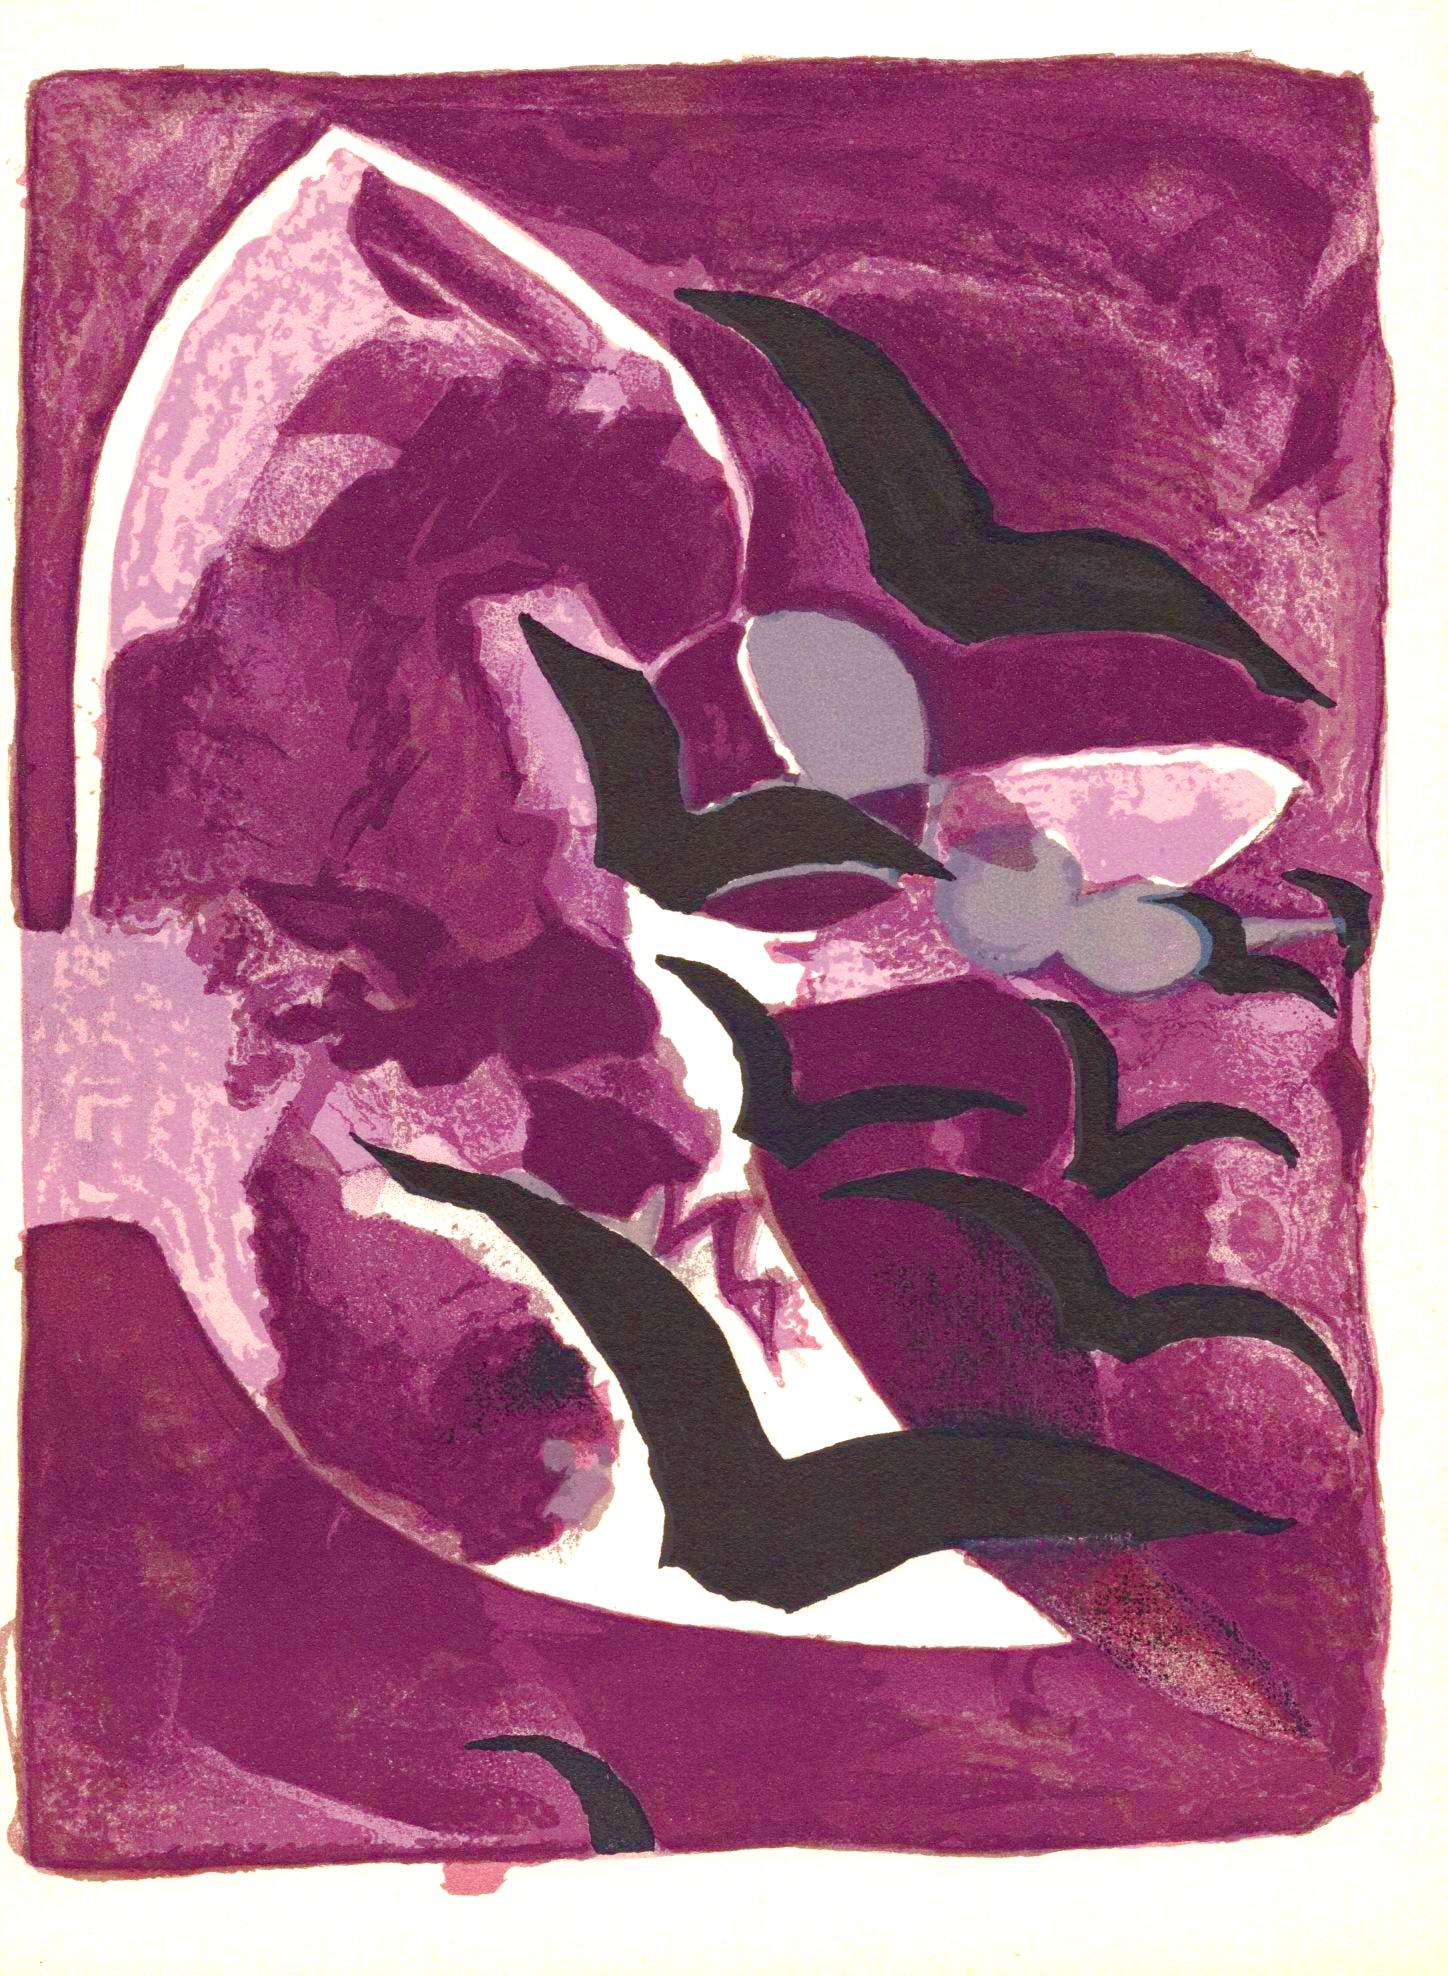 Georges Braque Landscape Print - Braque, Les oiseaux de nuit, Prints from the Mourlot Press (after)